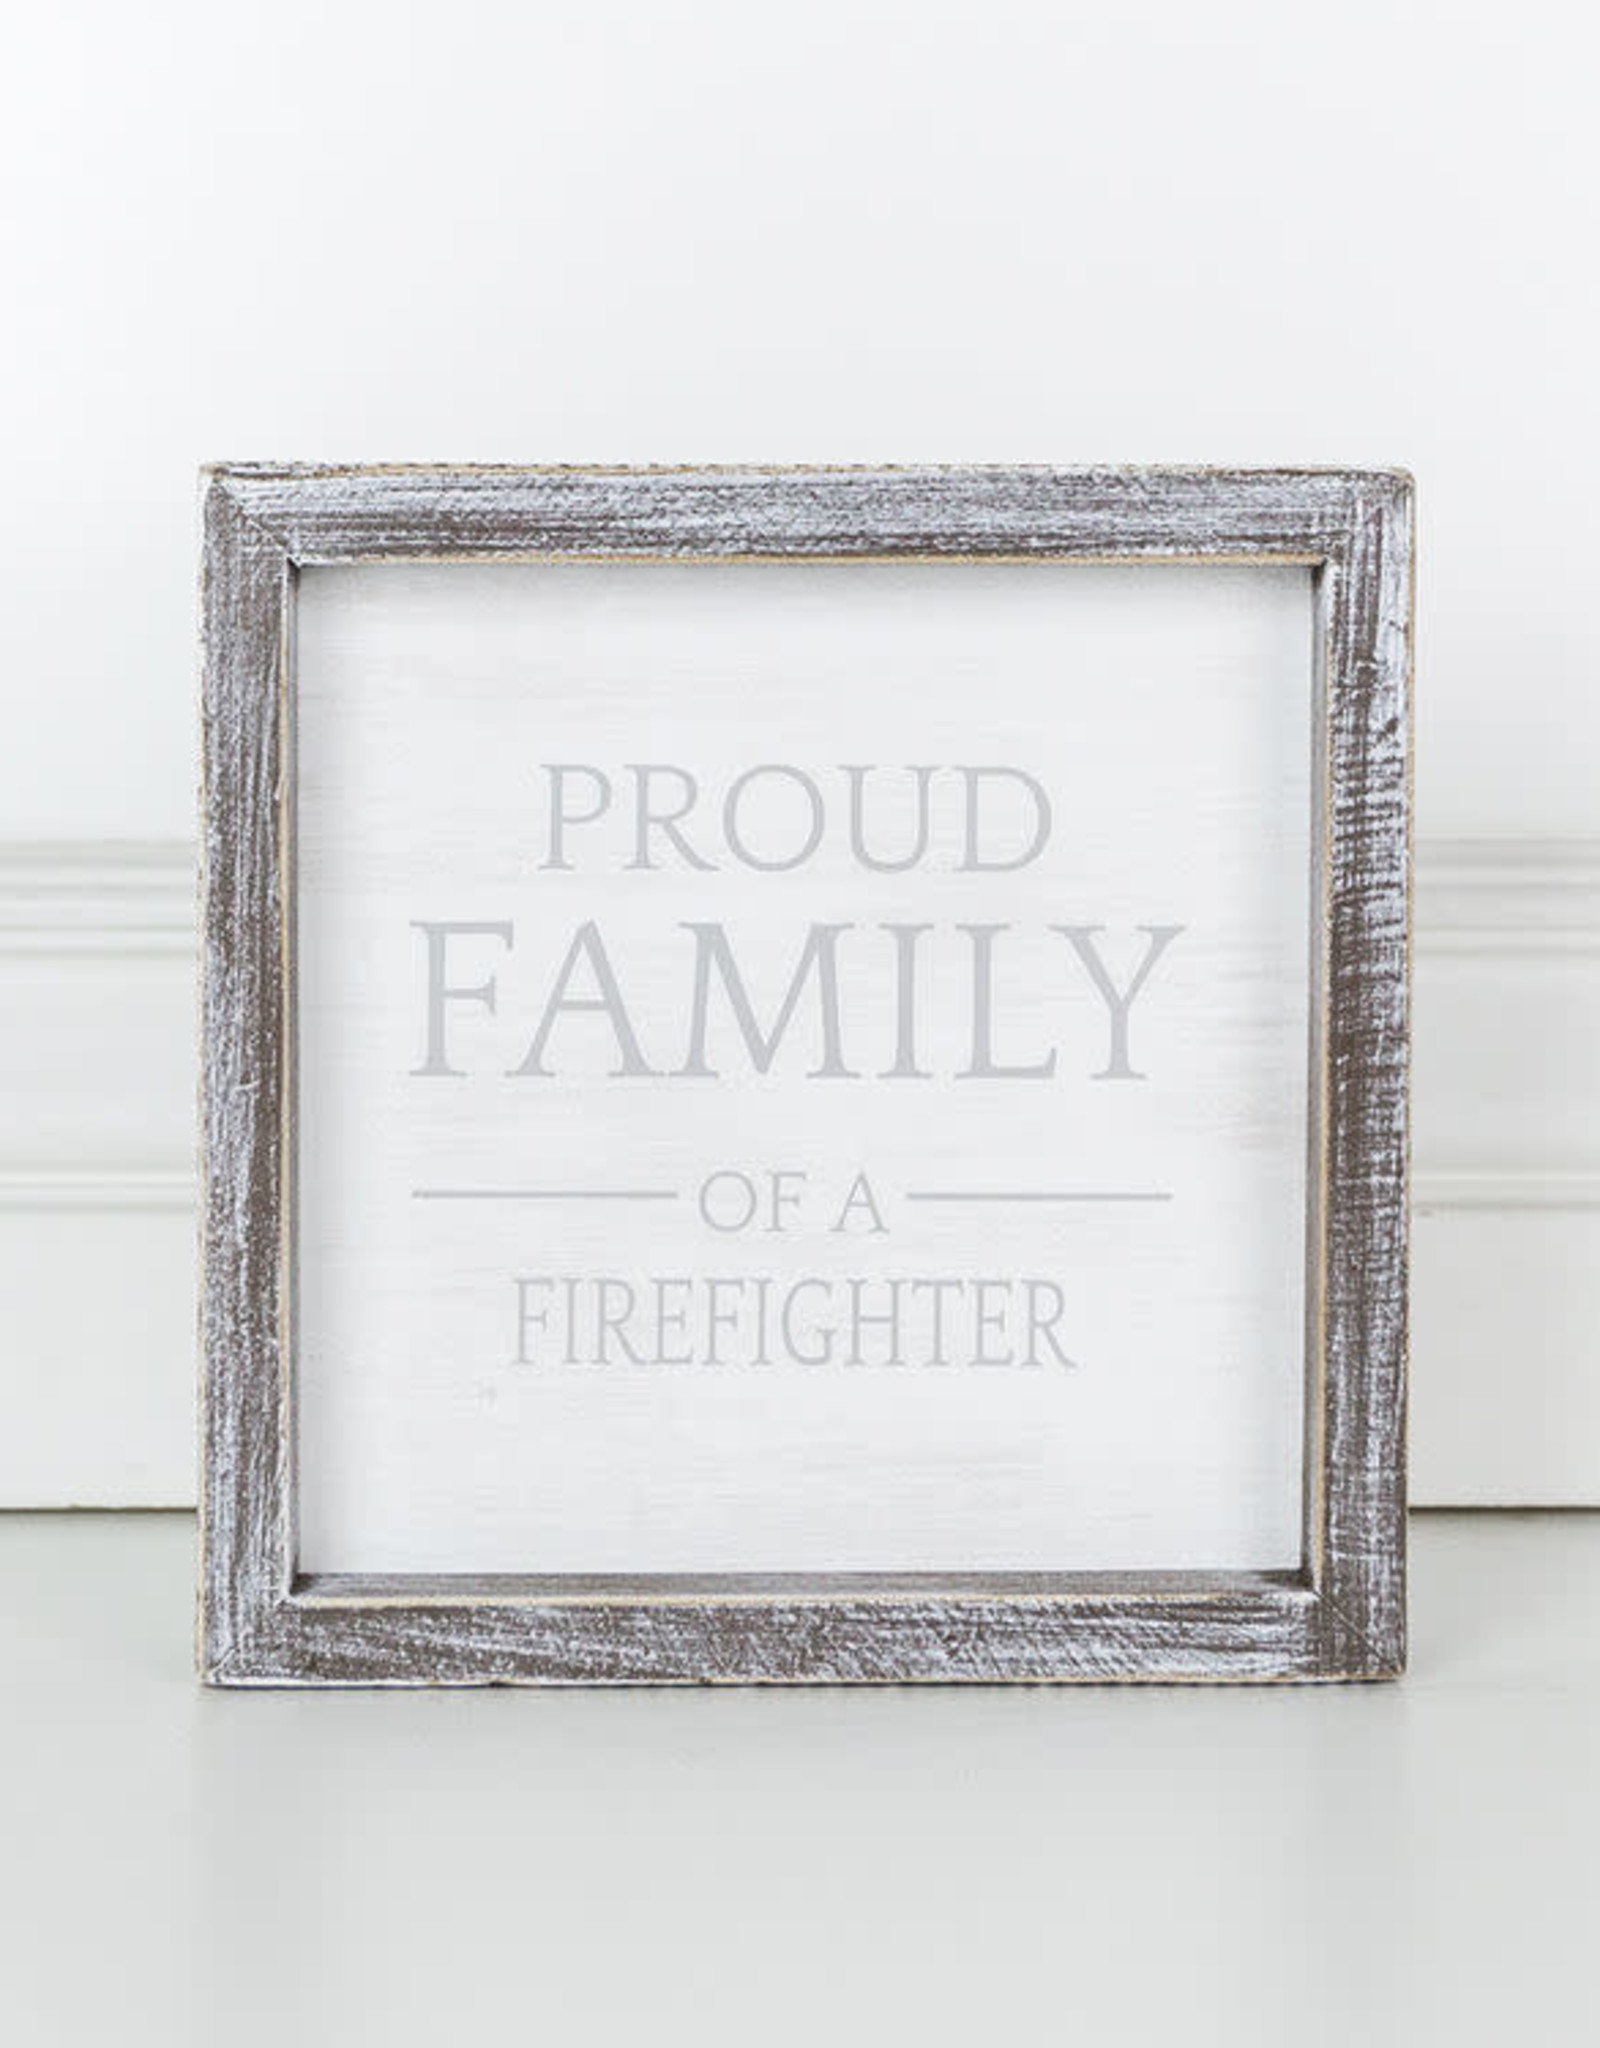 Adams & Co Proud Family - Firefigher